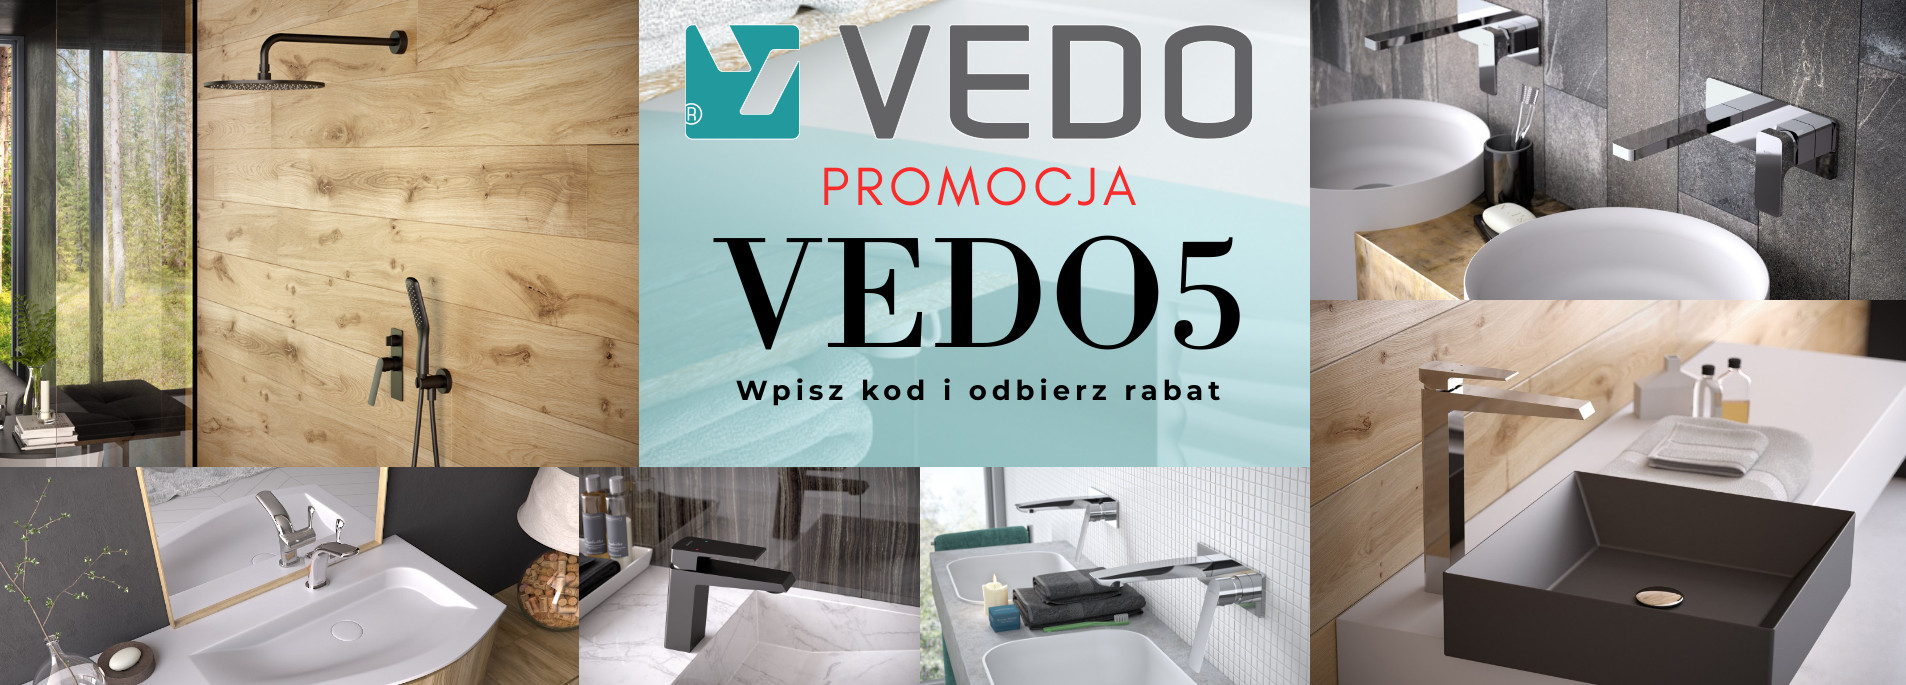 Promocja-Vedo3